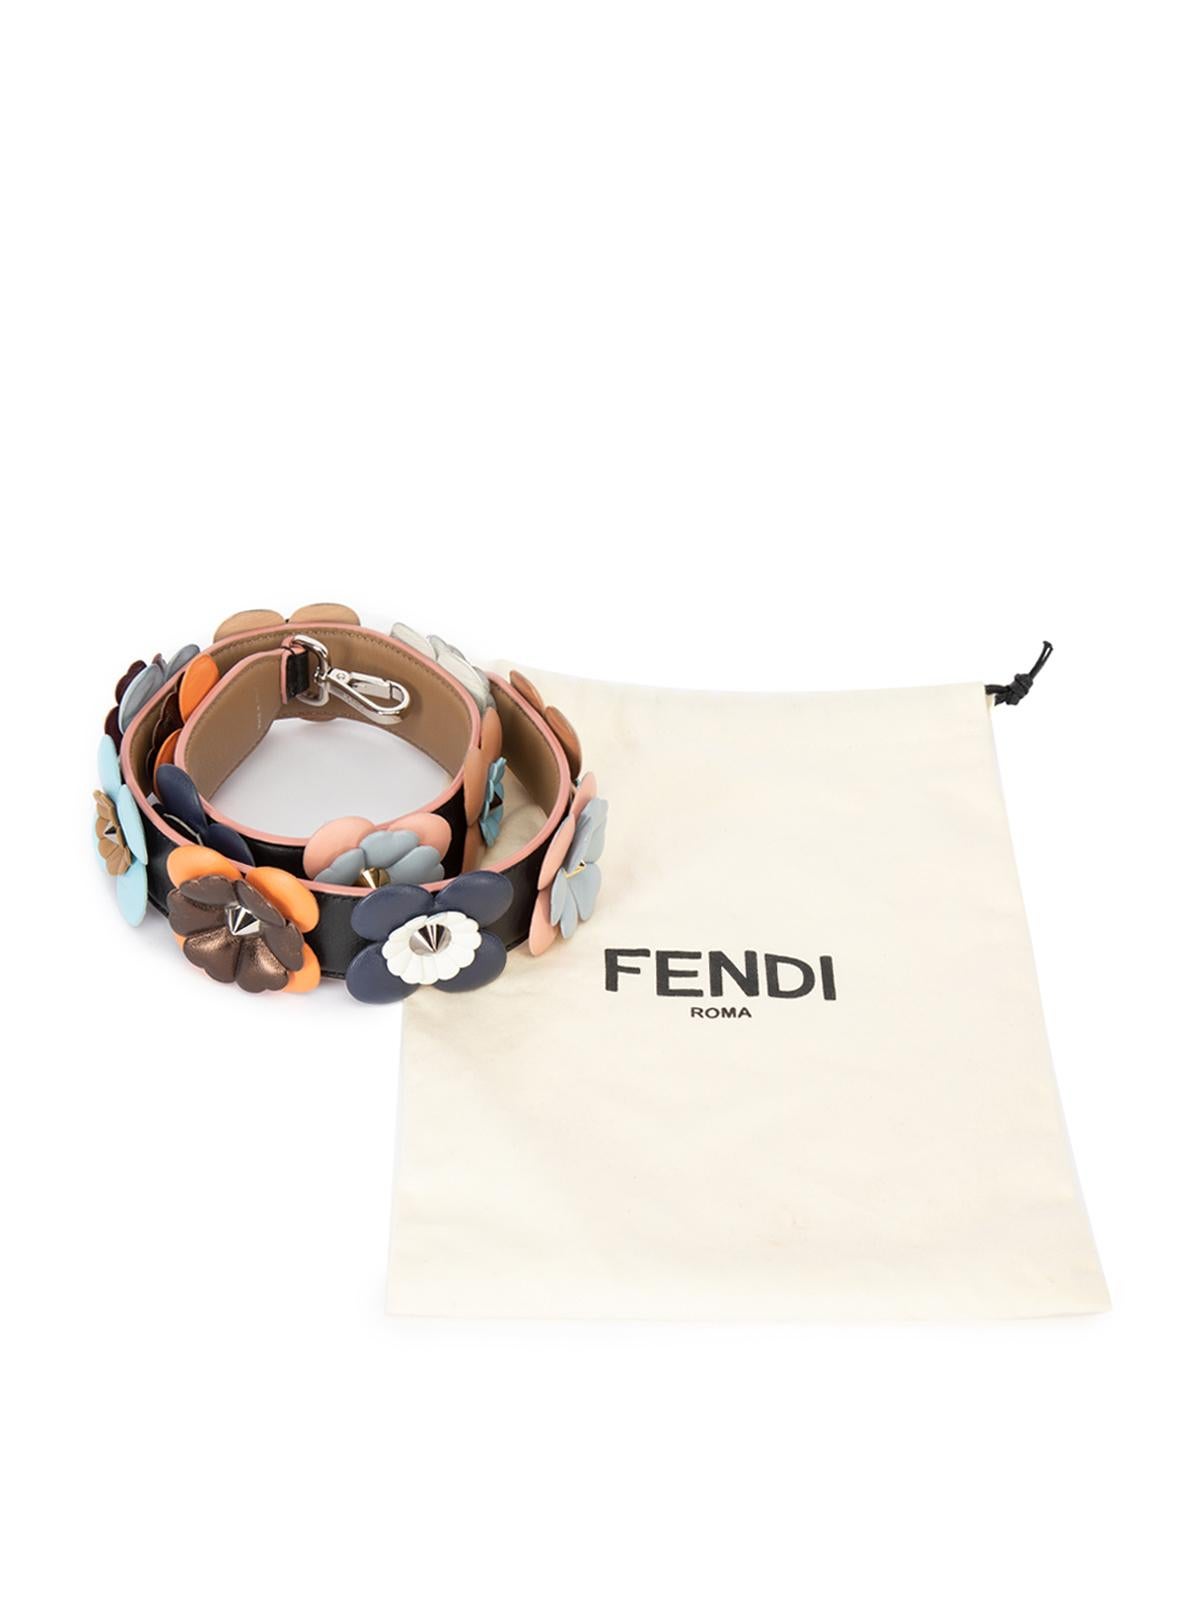 Pre-Loved Fendi Women's Leather Floral Embellished Bag Strap 2